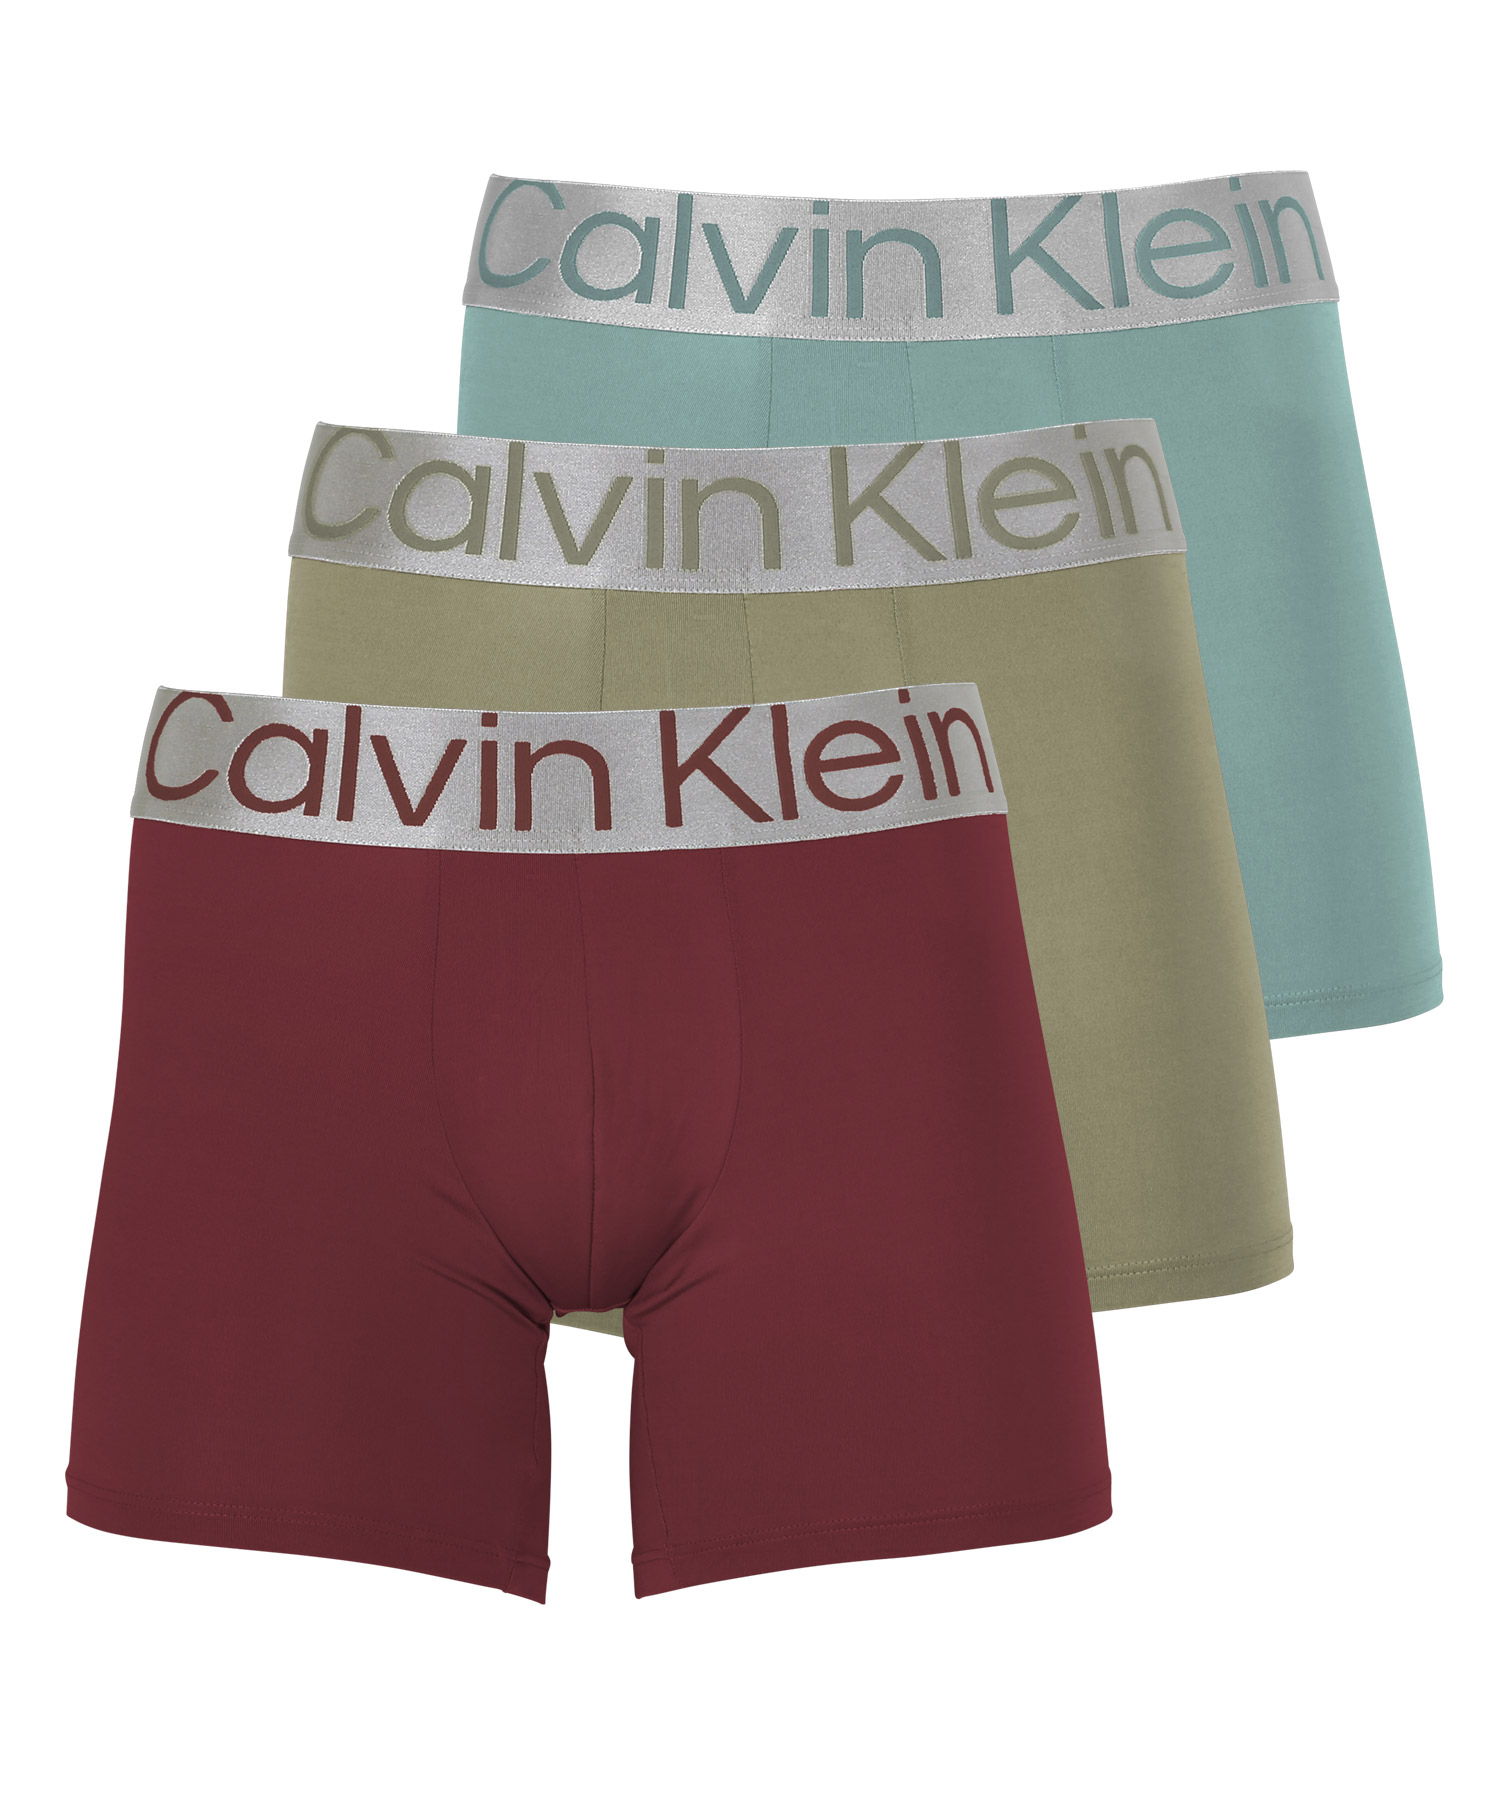 カルバンクライン ボクサーパンツ 3枚セット メンズ ロング Calvin Klein アンダーウェア 男性下着 ツルツル 速乾 CK 父の日